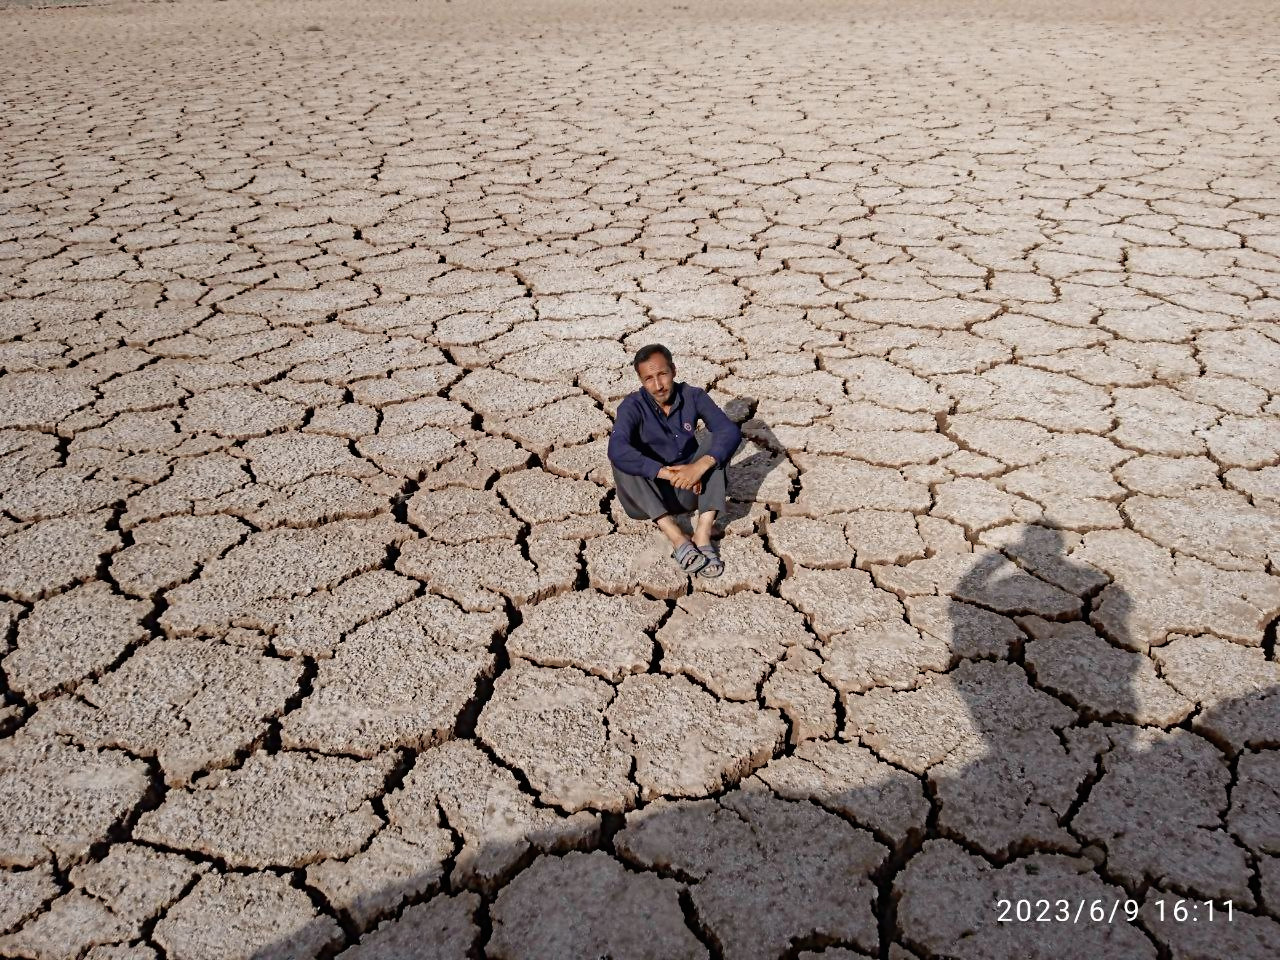 photo_۲۰۲۳-۰۶-۱۰_۰۳-۱۶-۰۵.jpg تصویری  تلخ از خشک شدن سدشهید یعقوبی 
درضلع شمال غربی سنگان بعلت خشکسالی سال 1402
جمعه 1402/3/19 by mohsen dehbashi